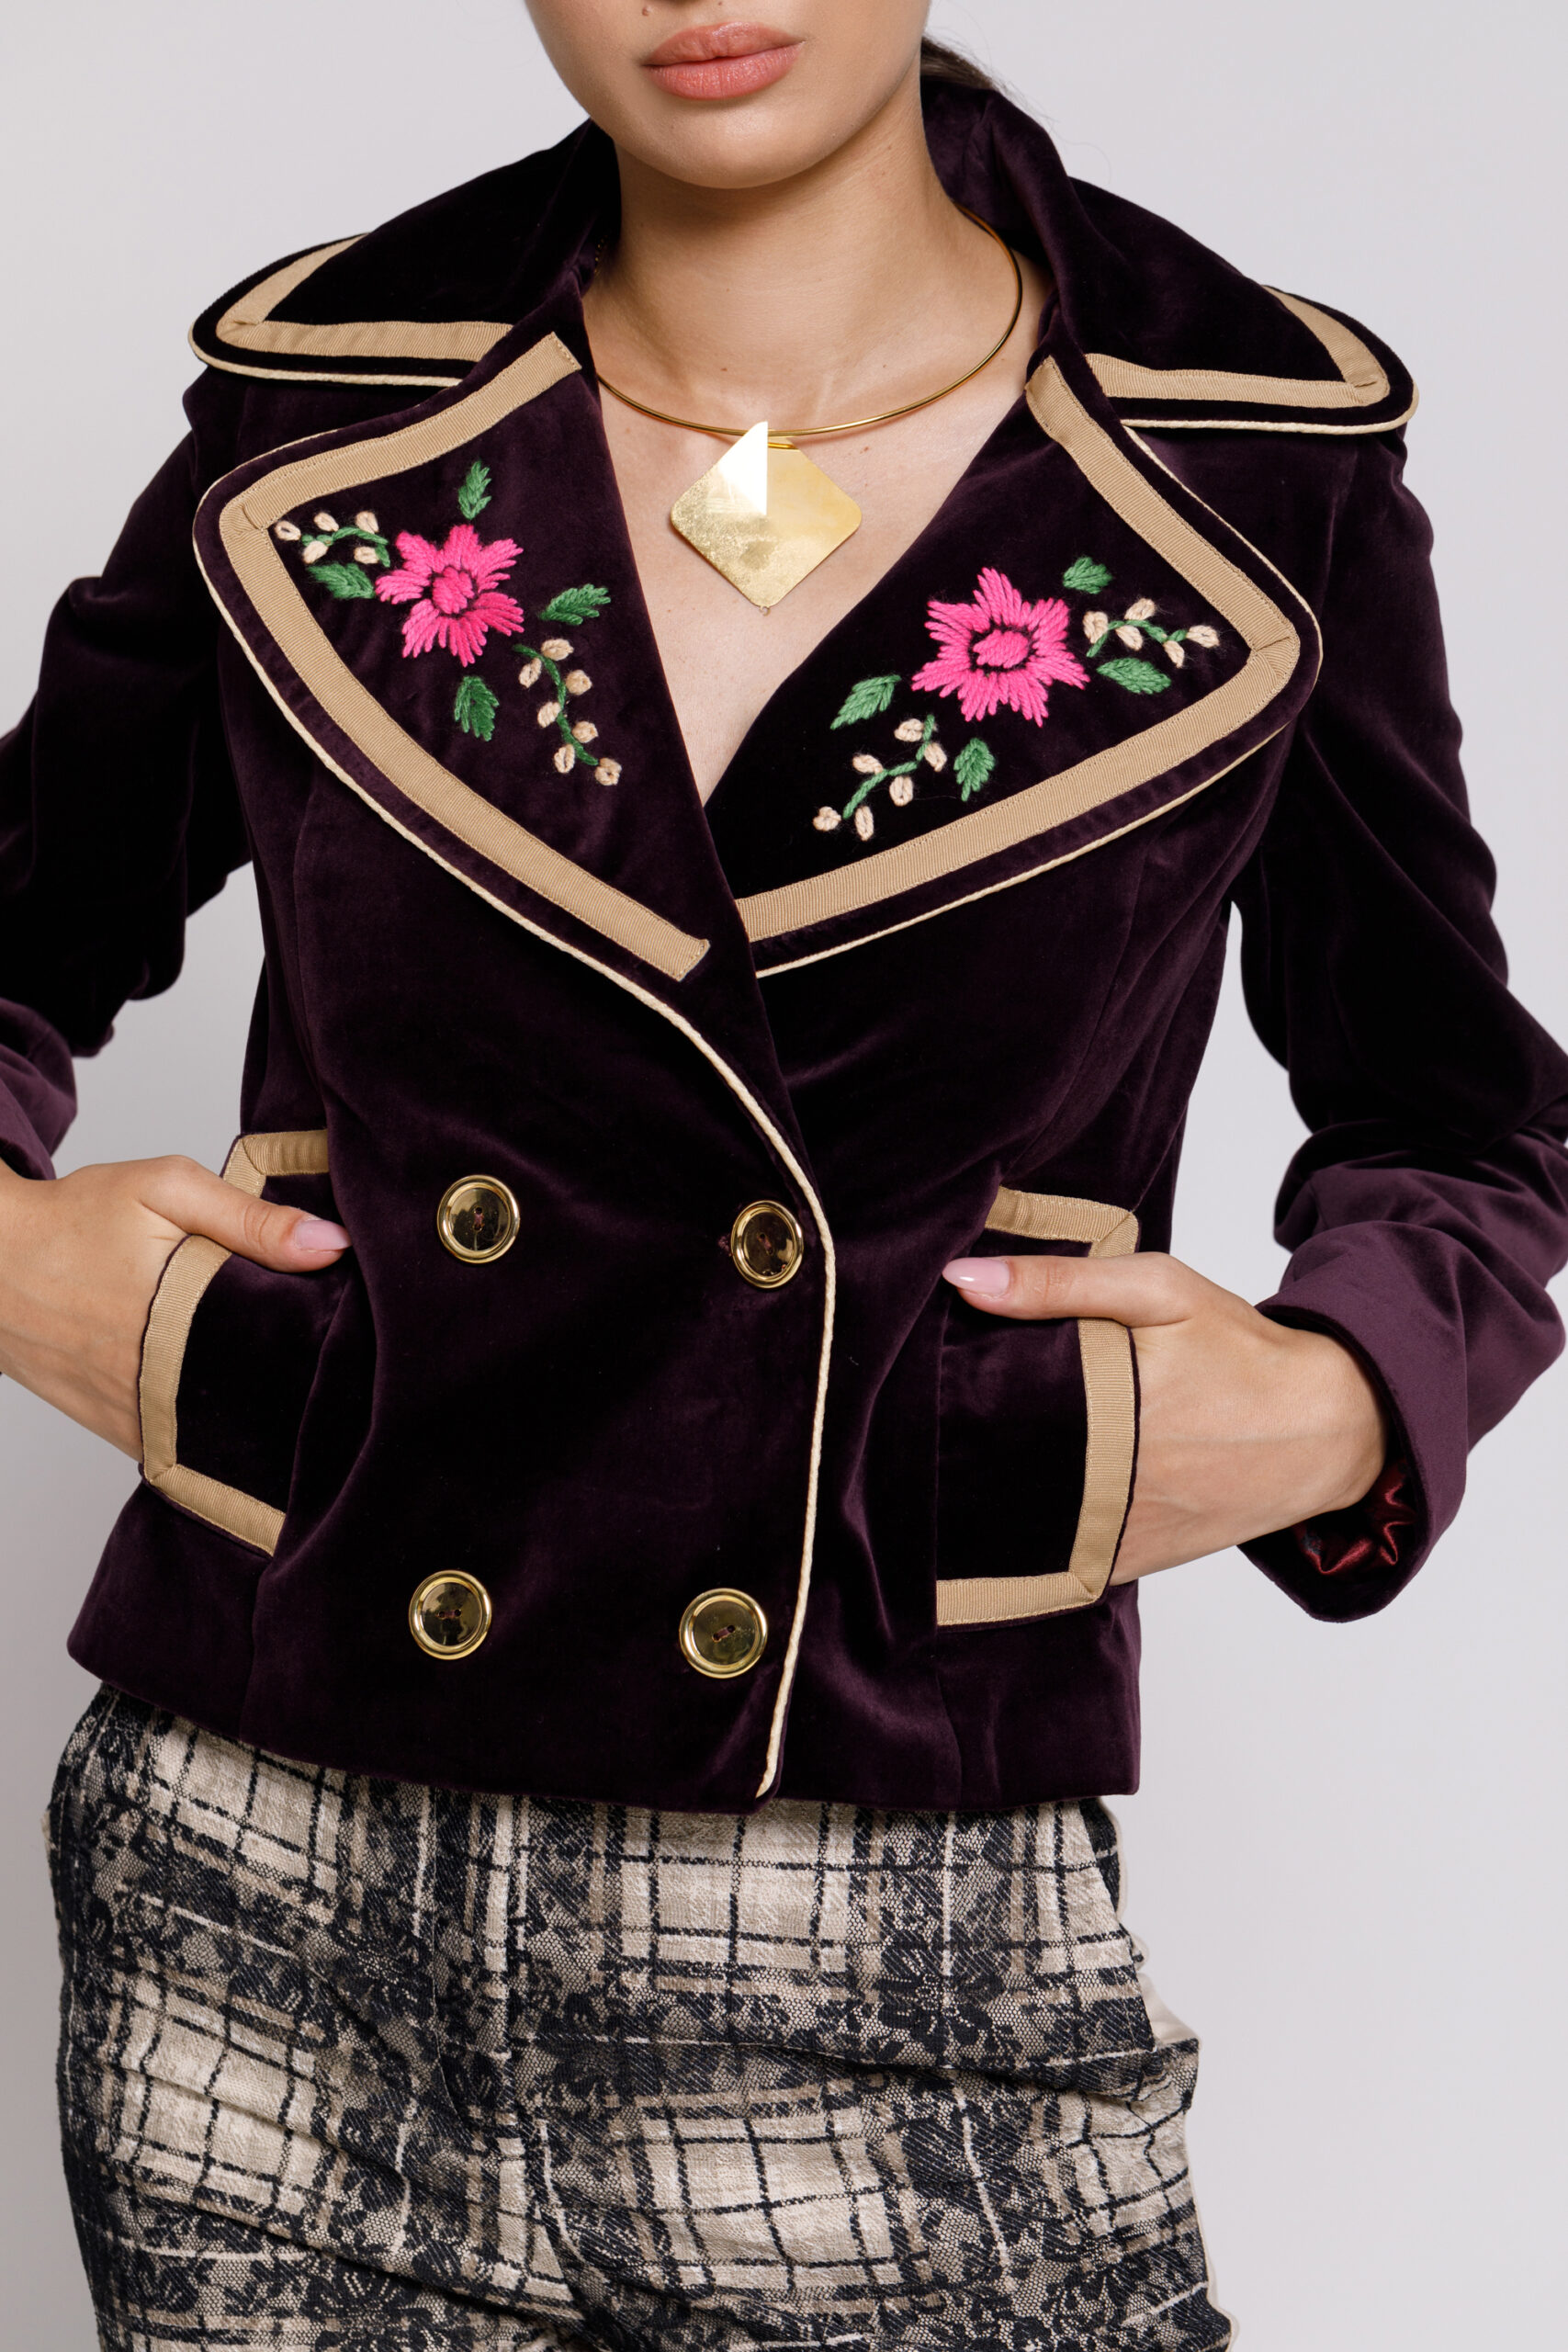 Jacheta DAVINA eleganta din catifea violet cu broderie. Materiale naturale, design unicat, cu broderie si aplicatii handmade